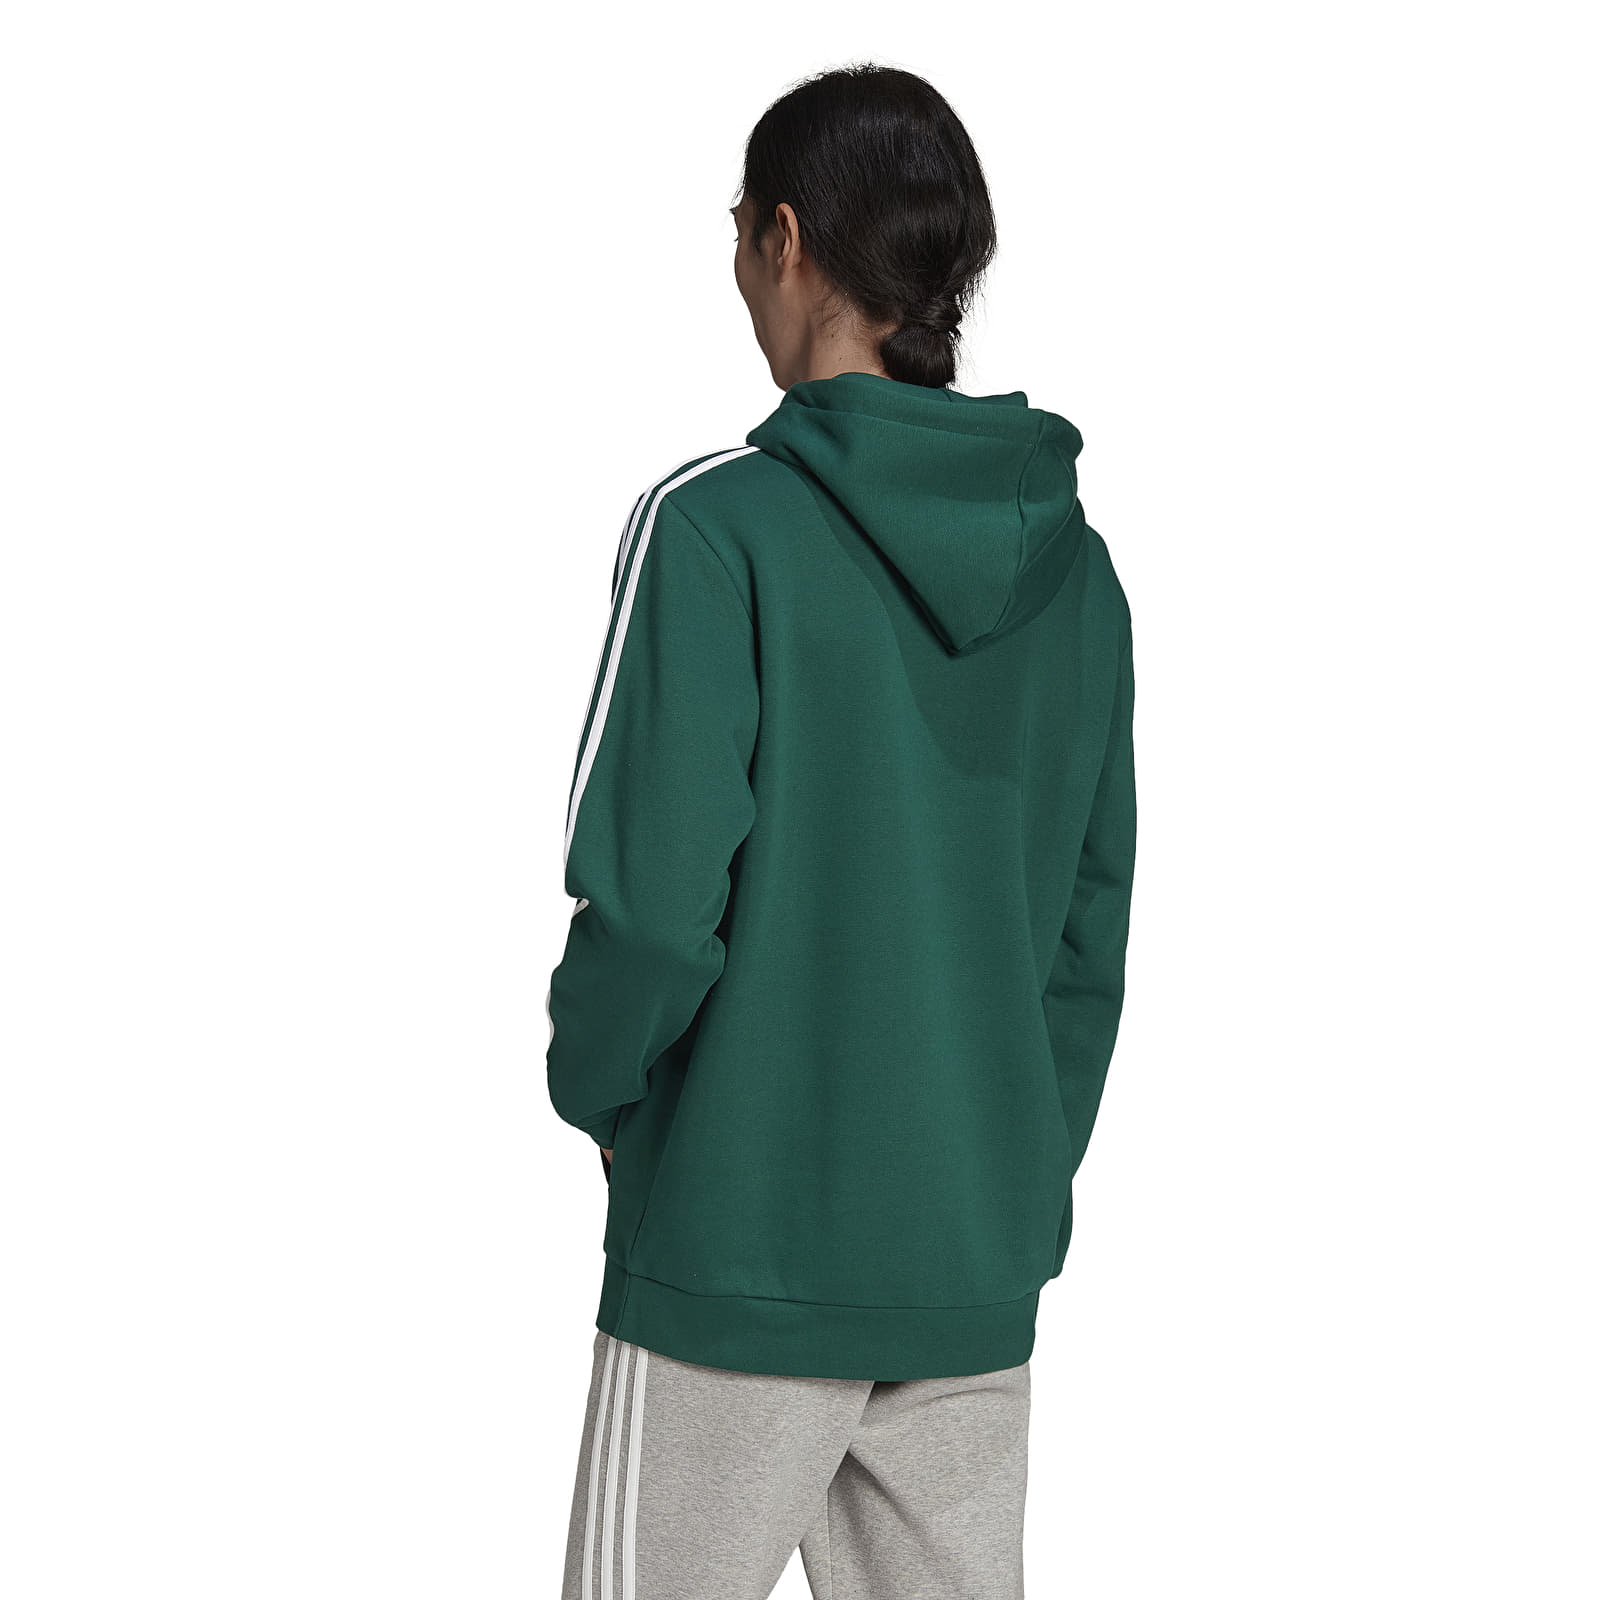 Hoodies Hoodie | Footshop Originals 3-Stripes Green sweatshirts and adidas